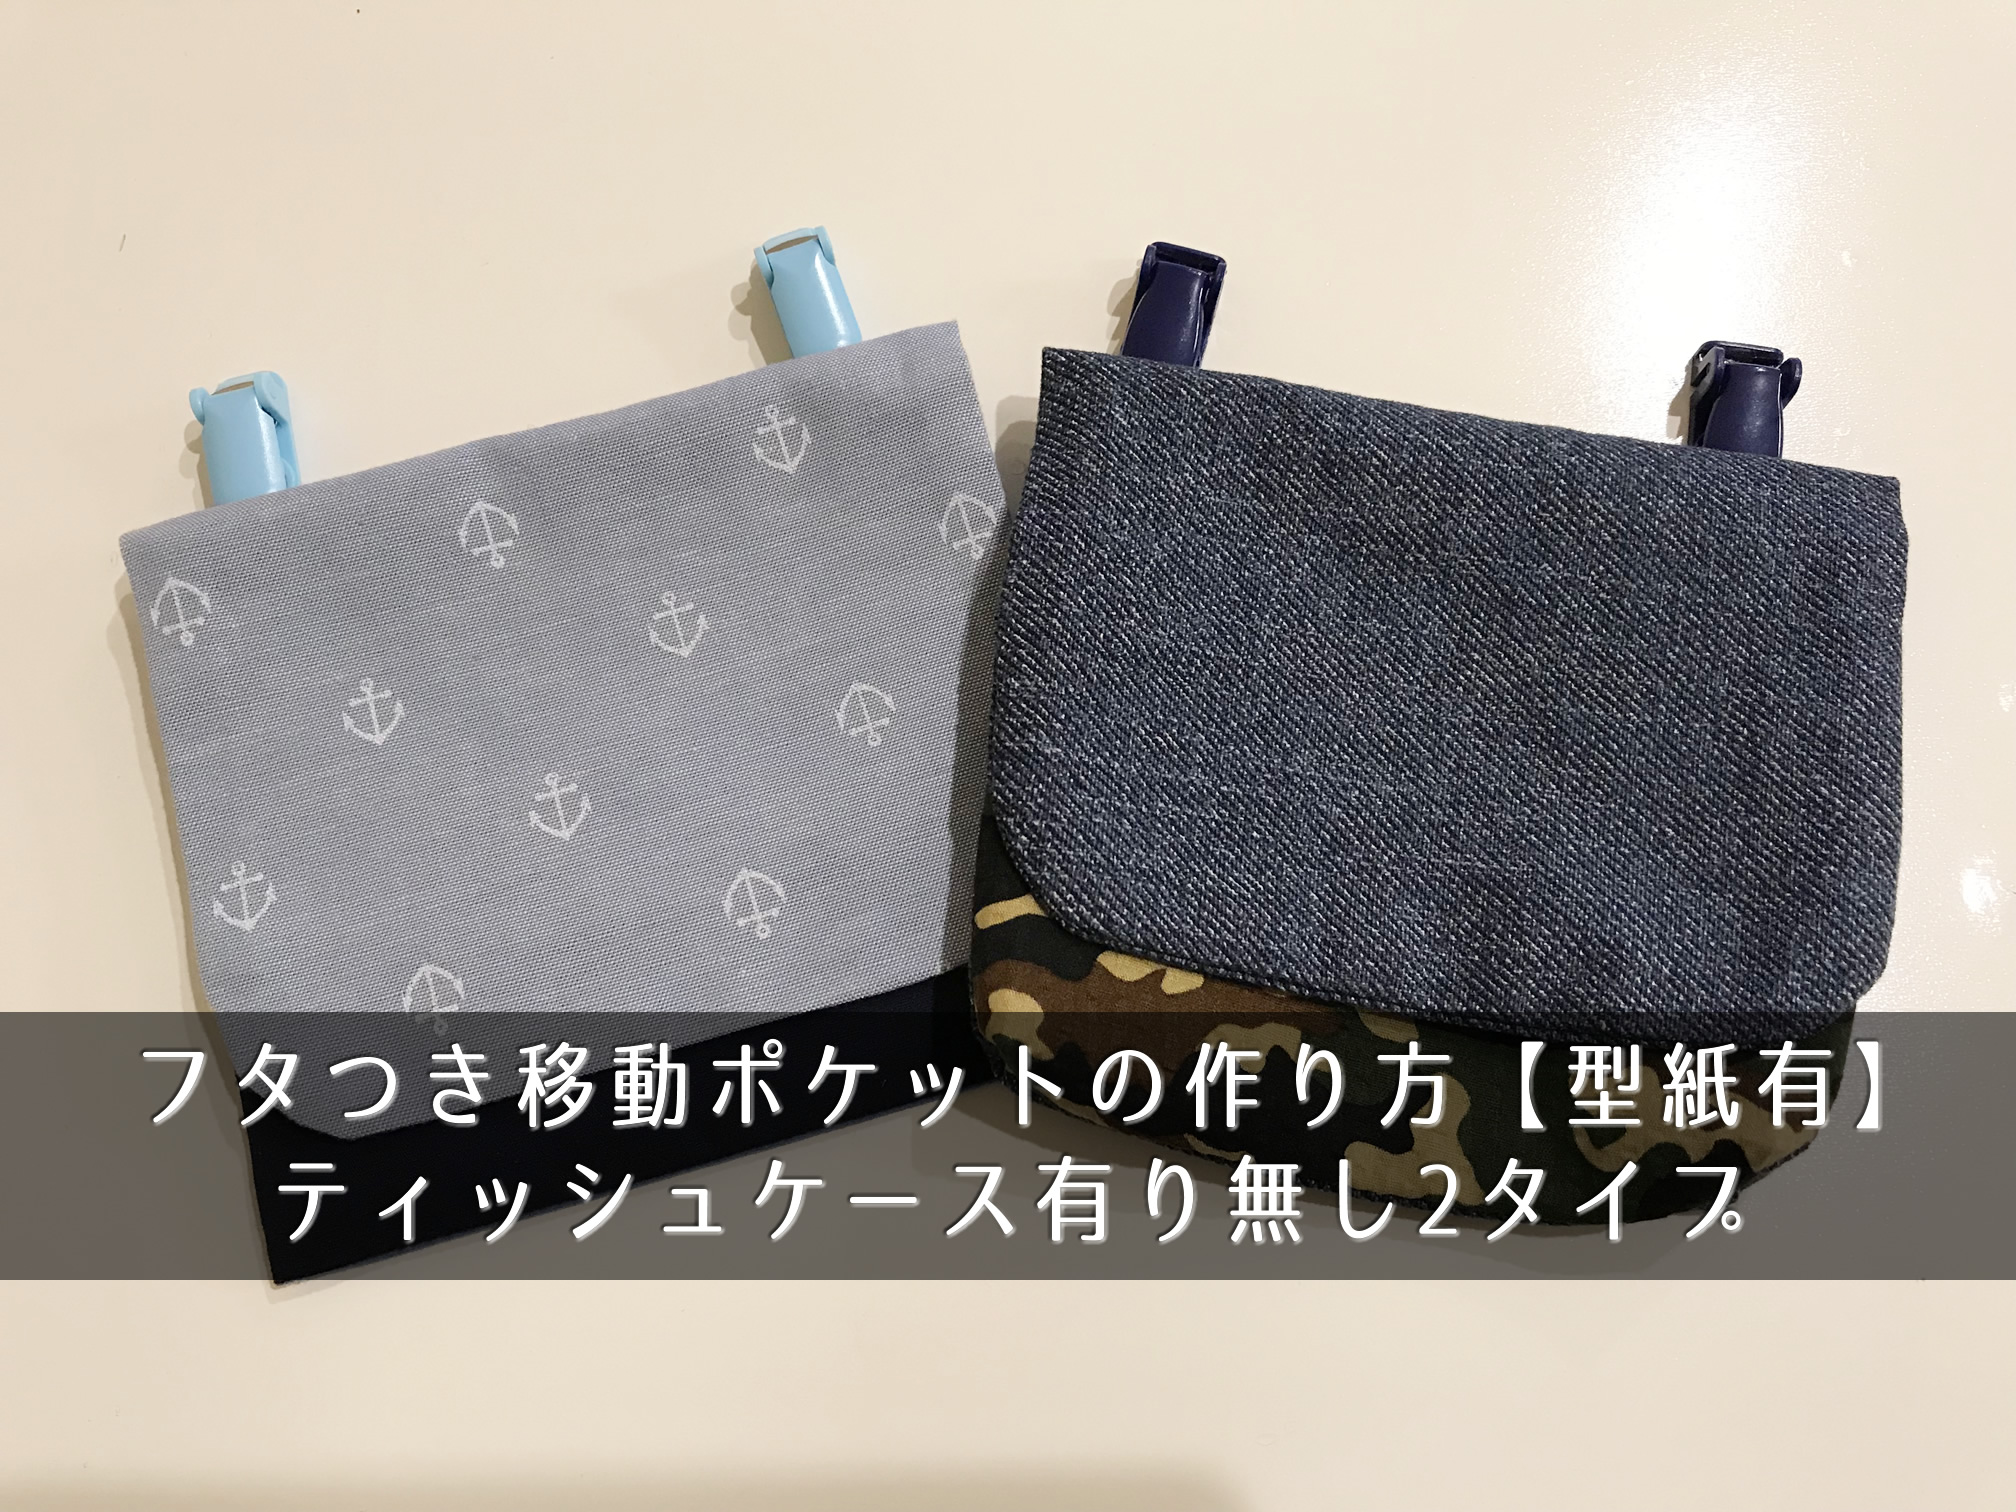 フタつき移動ポケットの作り方【型紙有】ティッシュケース有り無し2タイプ